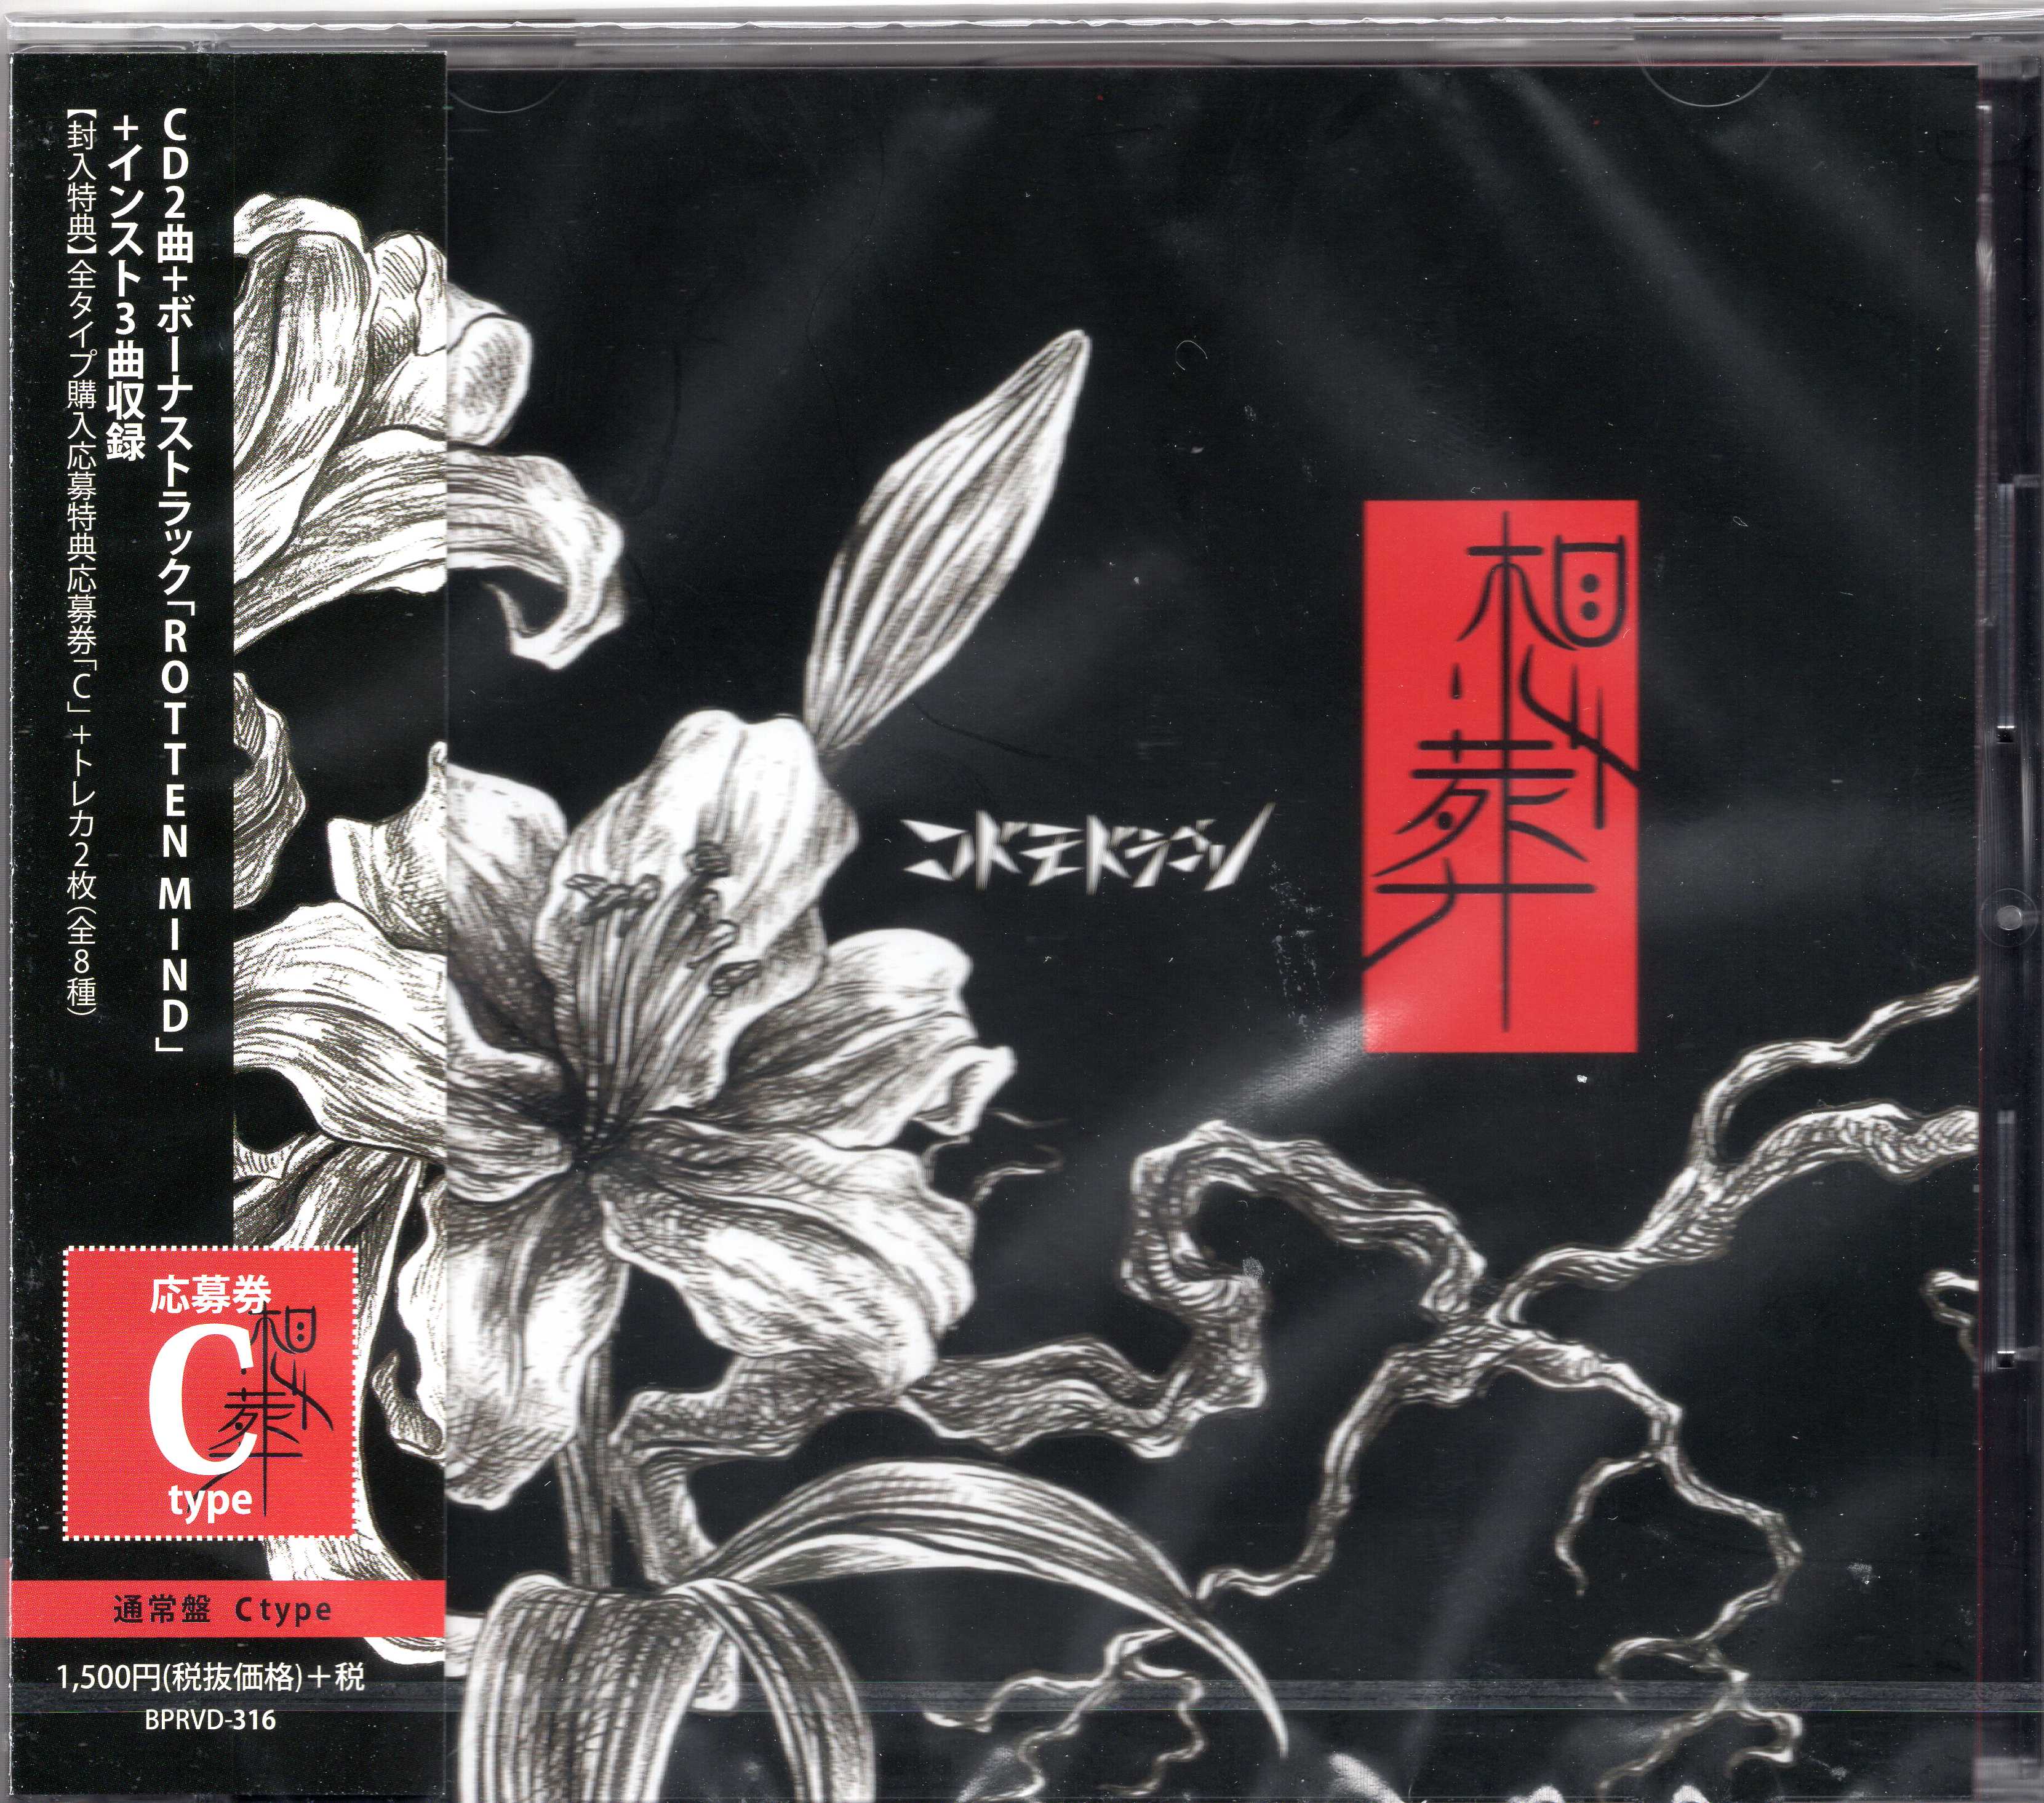 コドモドラゴン ( コドモドラゴン )  の CD 【通常盤C】想葬